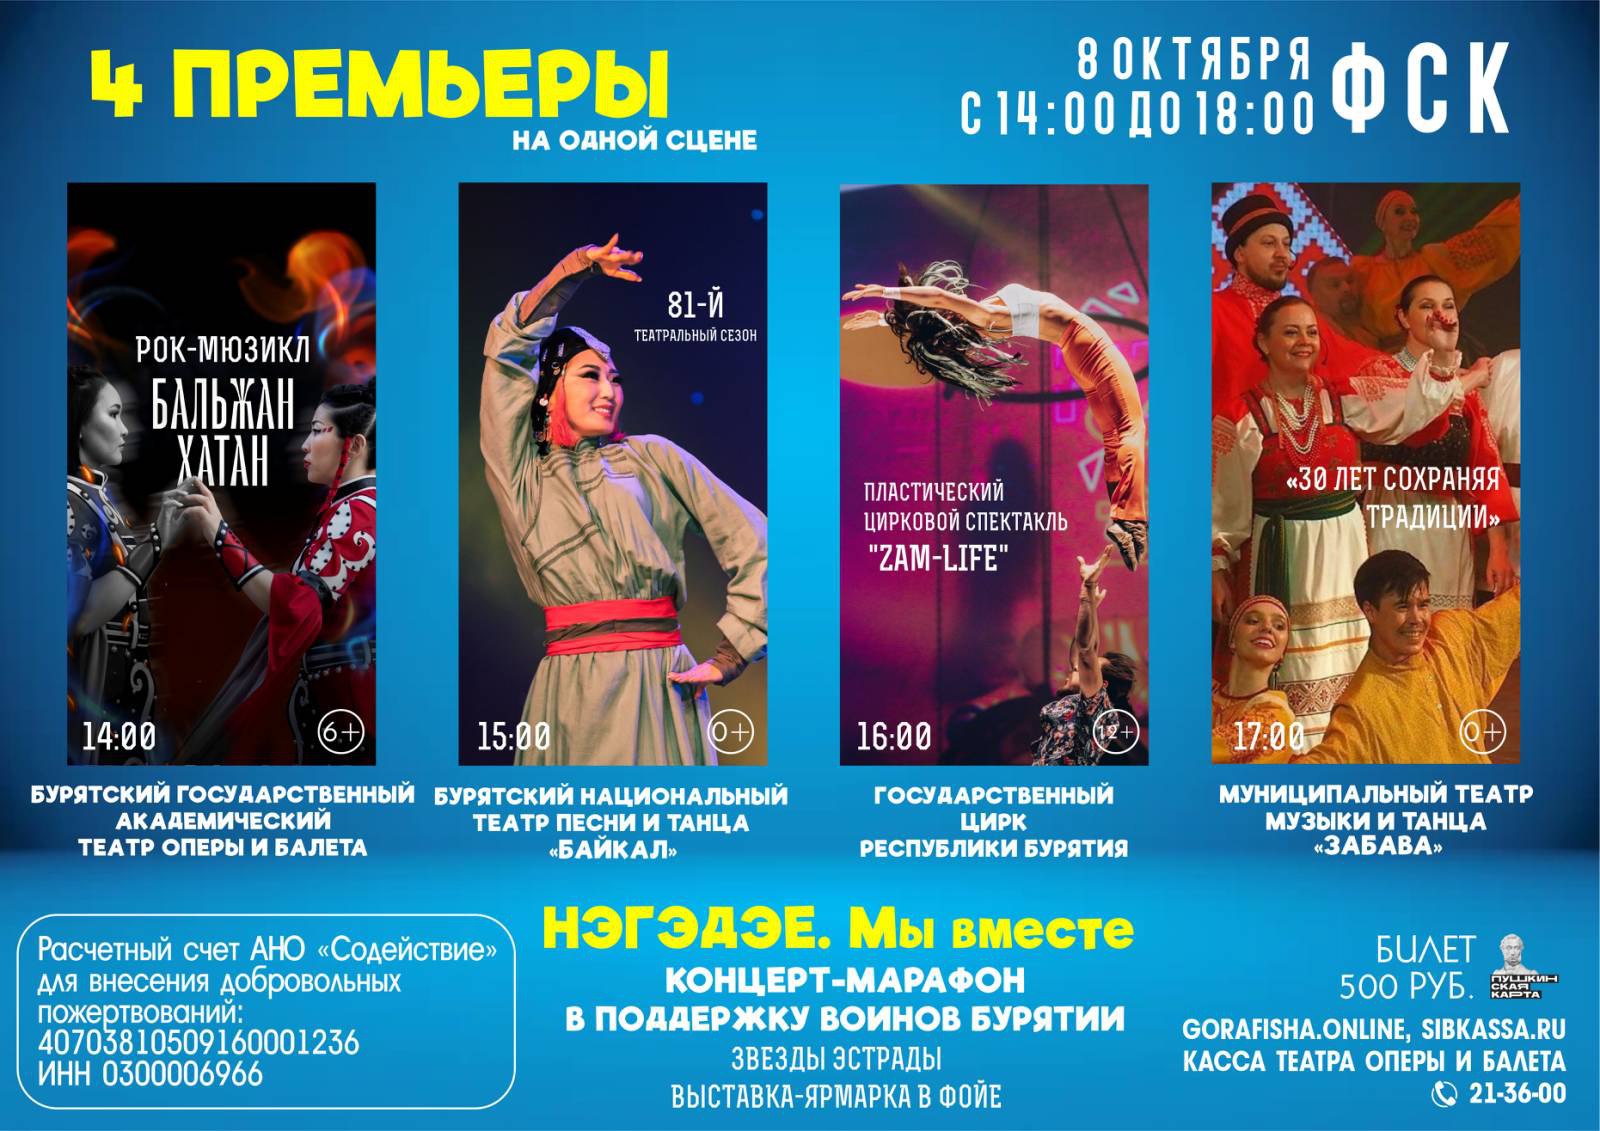 Купить билет на концерт в улан удэ. Концерты в Улан-Удэ. ФСК Улан-Удэ концерт. Афиша Бурятия. Бурятский цирк в Улан-Удэ.